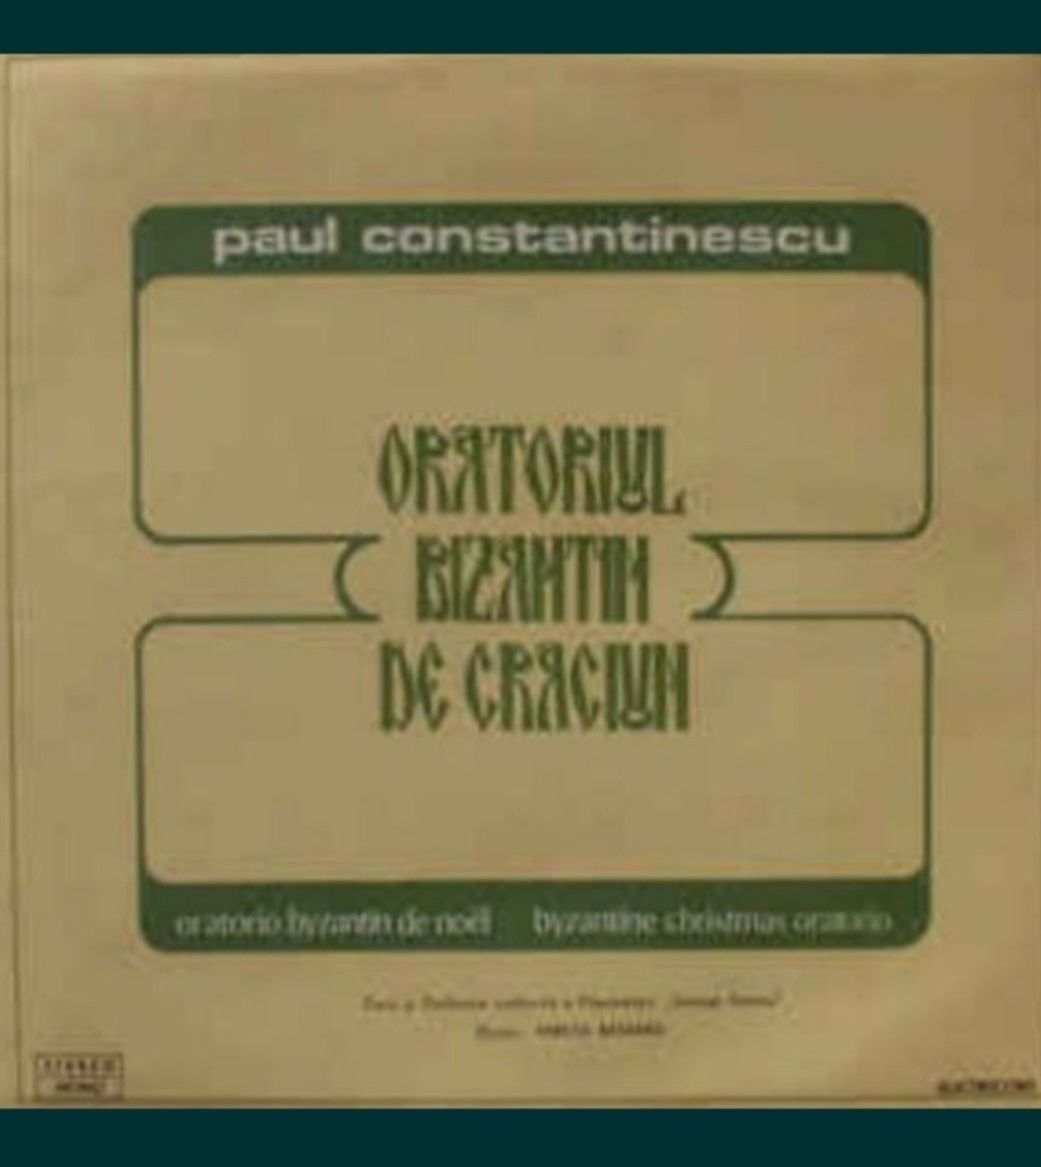 "Oratoriul bizantin de Crăciun " -Paul Constantinescu disc